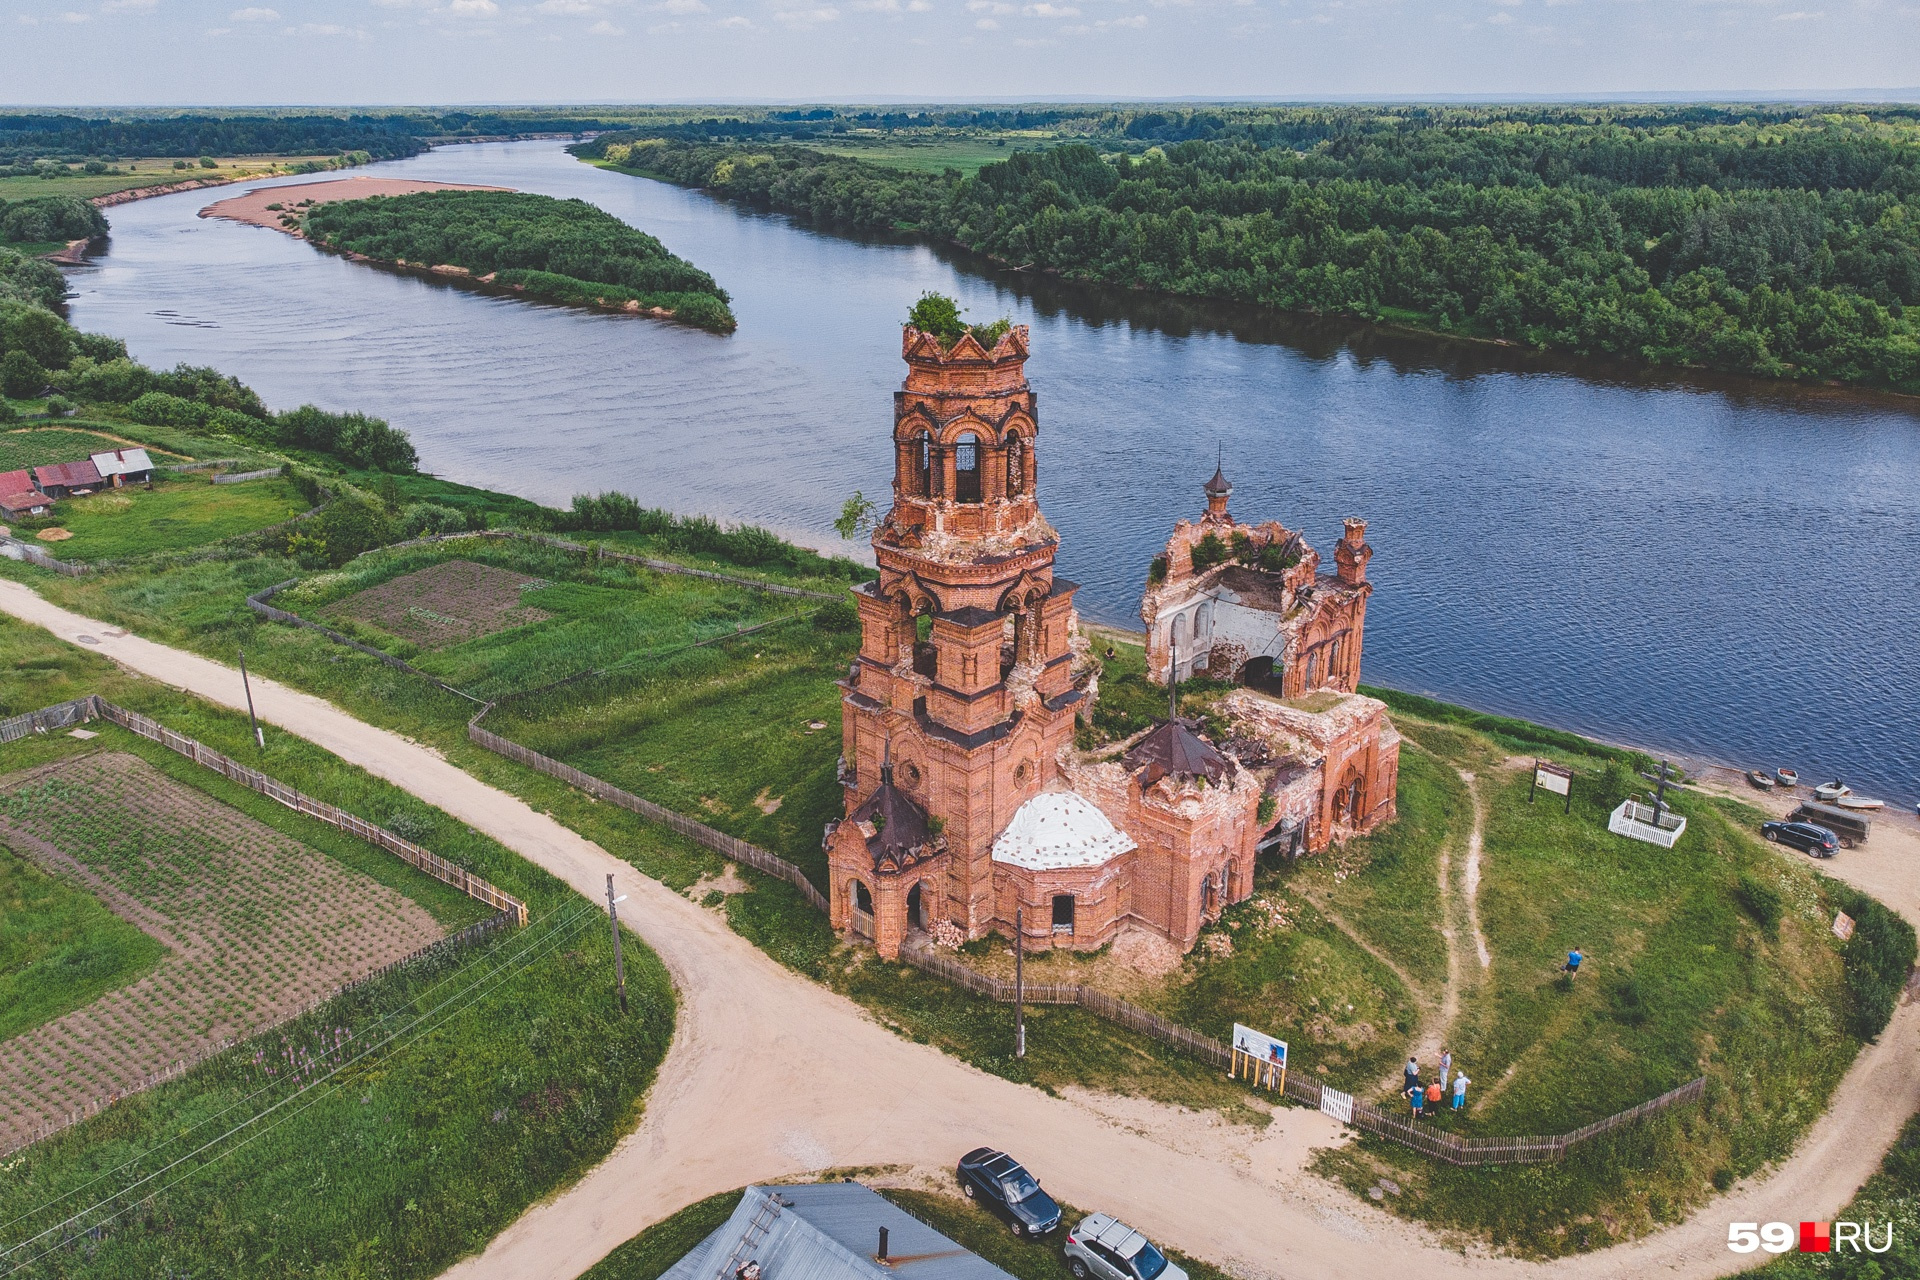 14 июля мы показали старинную церковь в селе Покча под Чердынью, которую недавно <a href="https://59.ru/text/culture/69364930/" target="_blank" class="_">начали восстанавливать местные жители</a><br>